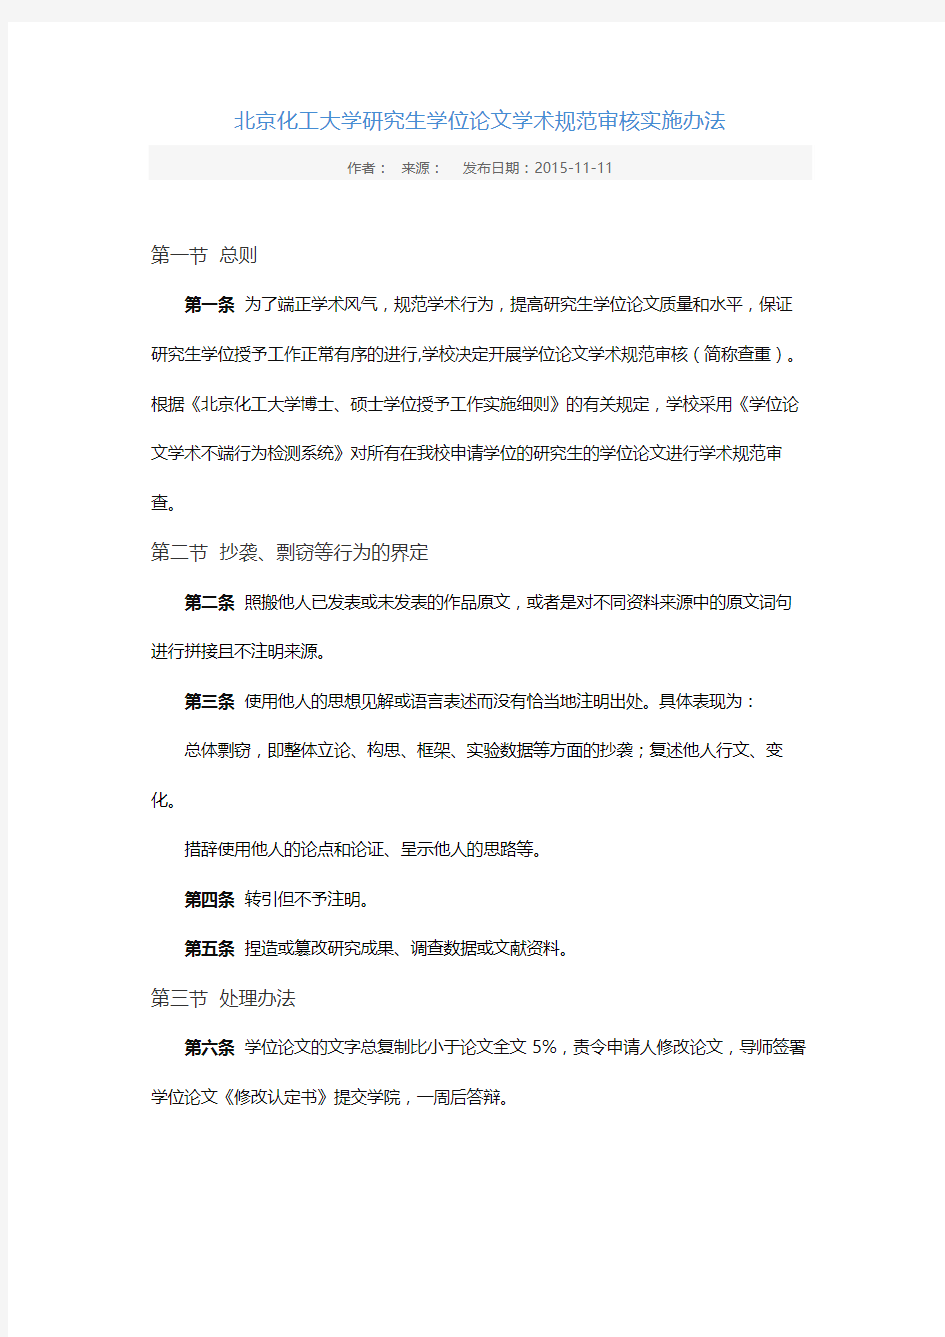 北京化工大学研究生学位论文学术规范审核实施办法